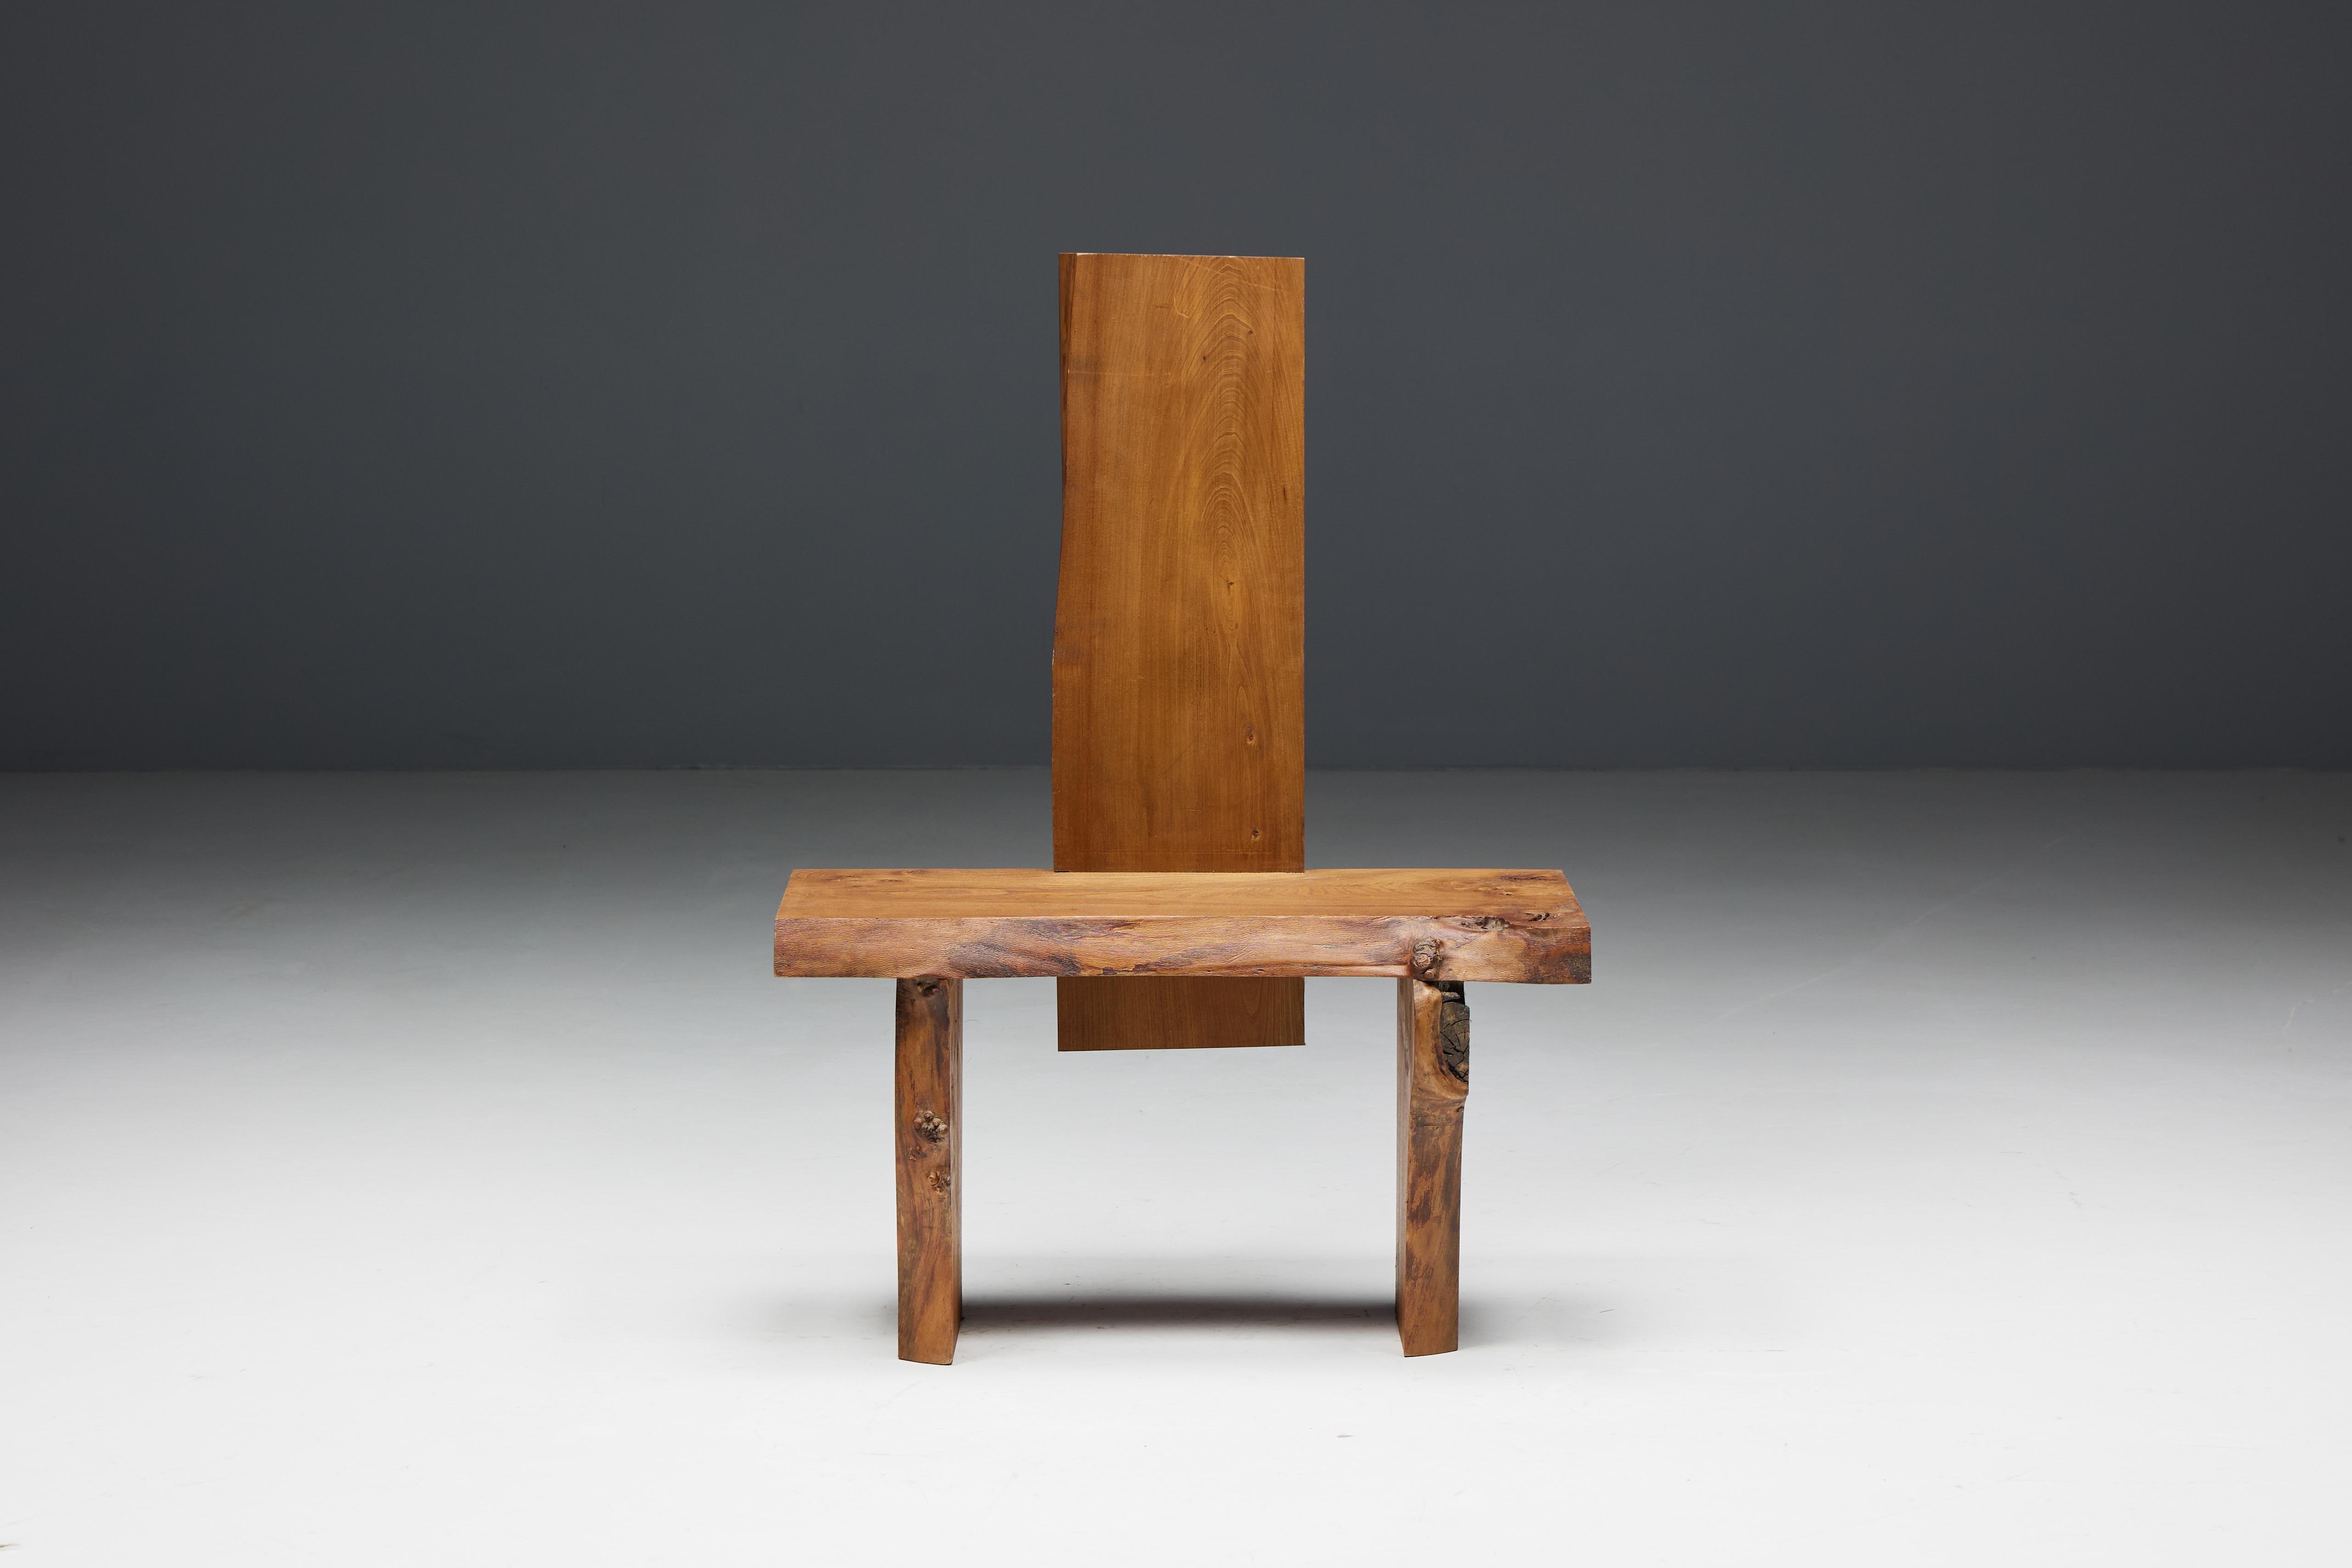 Brutalistischer Hochlehner, ein Statement aus massiven Baumstamm-Brettern. Dieser Stuhl verkörpert die raue Essenz der Natur und bringt ihre raue Schönheit und einzigartigen Strukturen zur Geltung. Die hohe Rückenlehne setzt ein markantes optisches